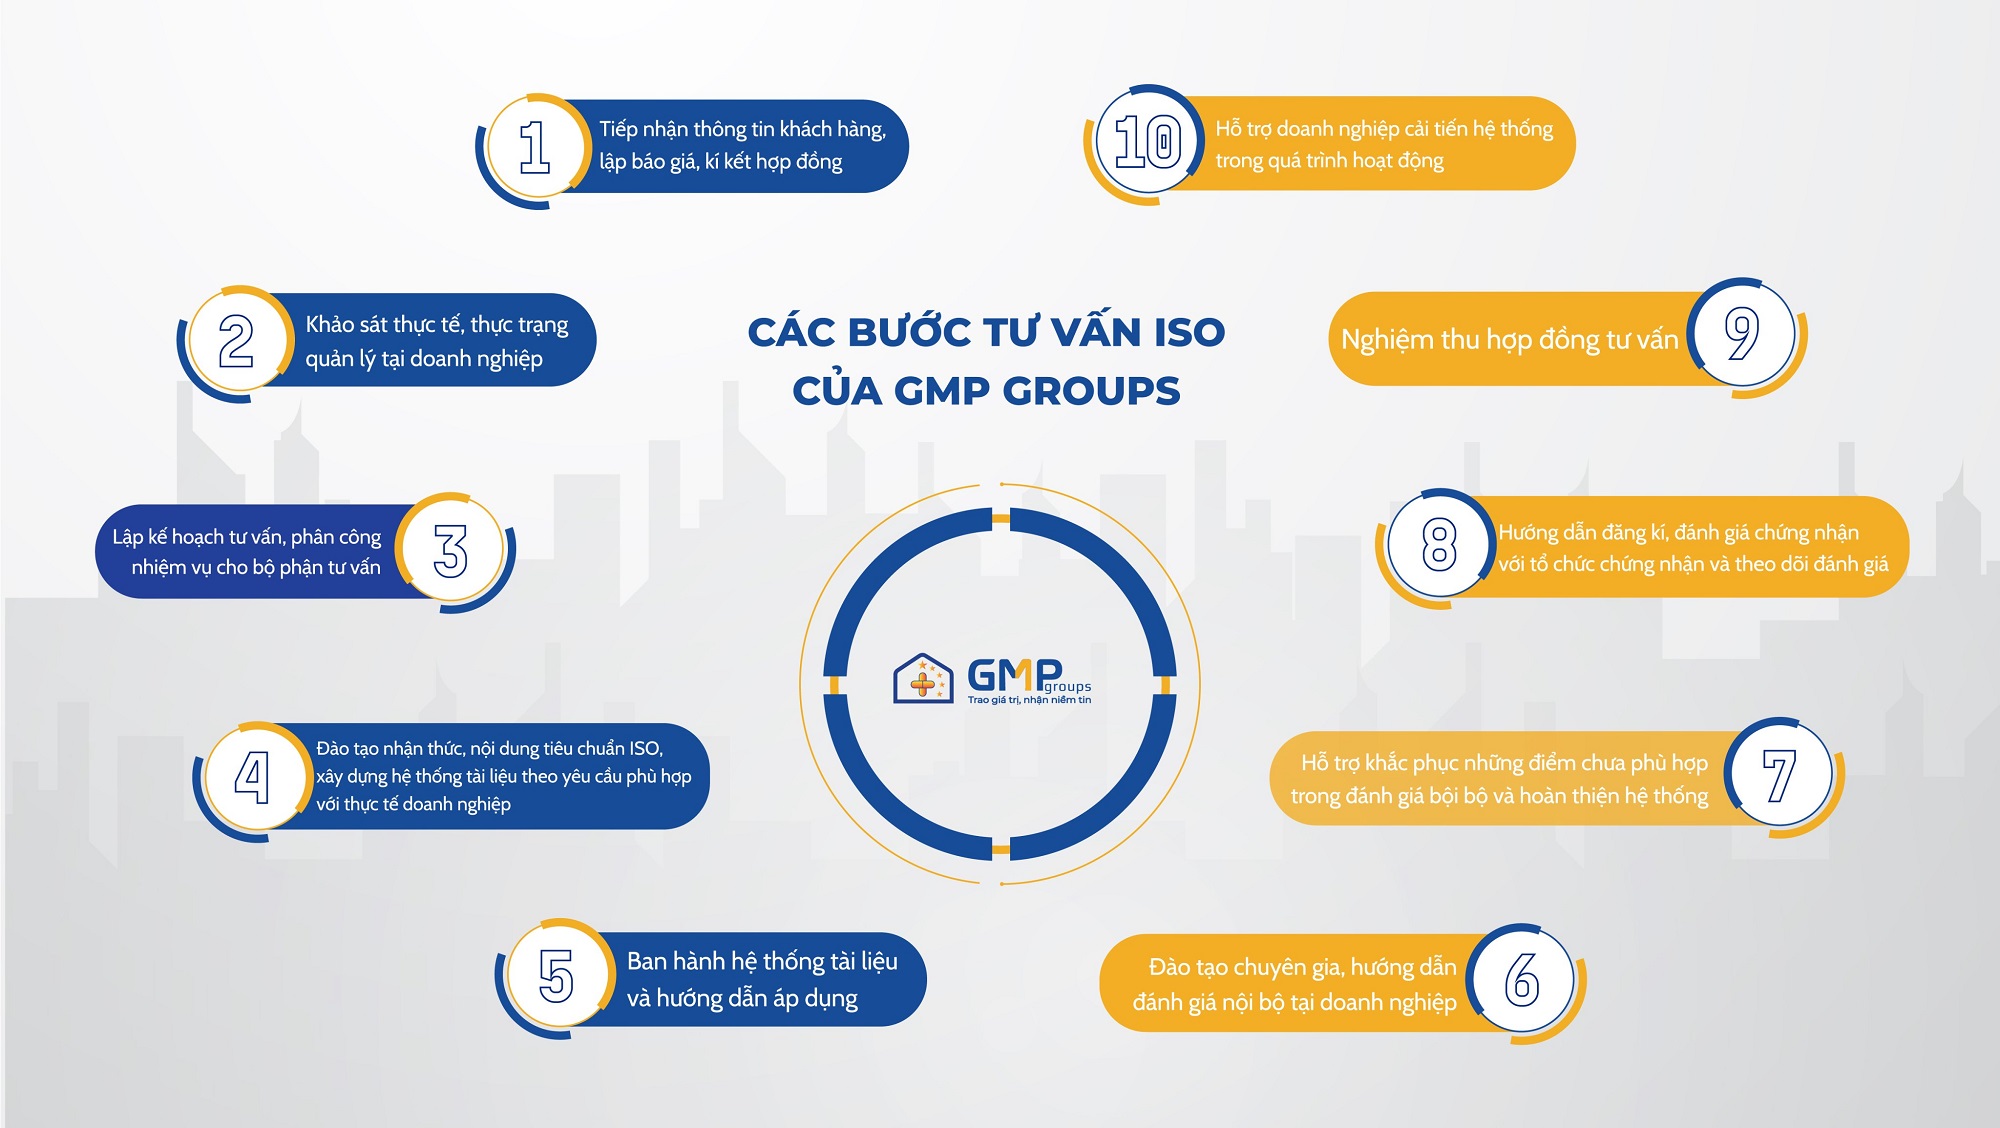 quy trình tư vấn chứng nhận ISO tại GMP Groups 